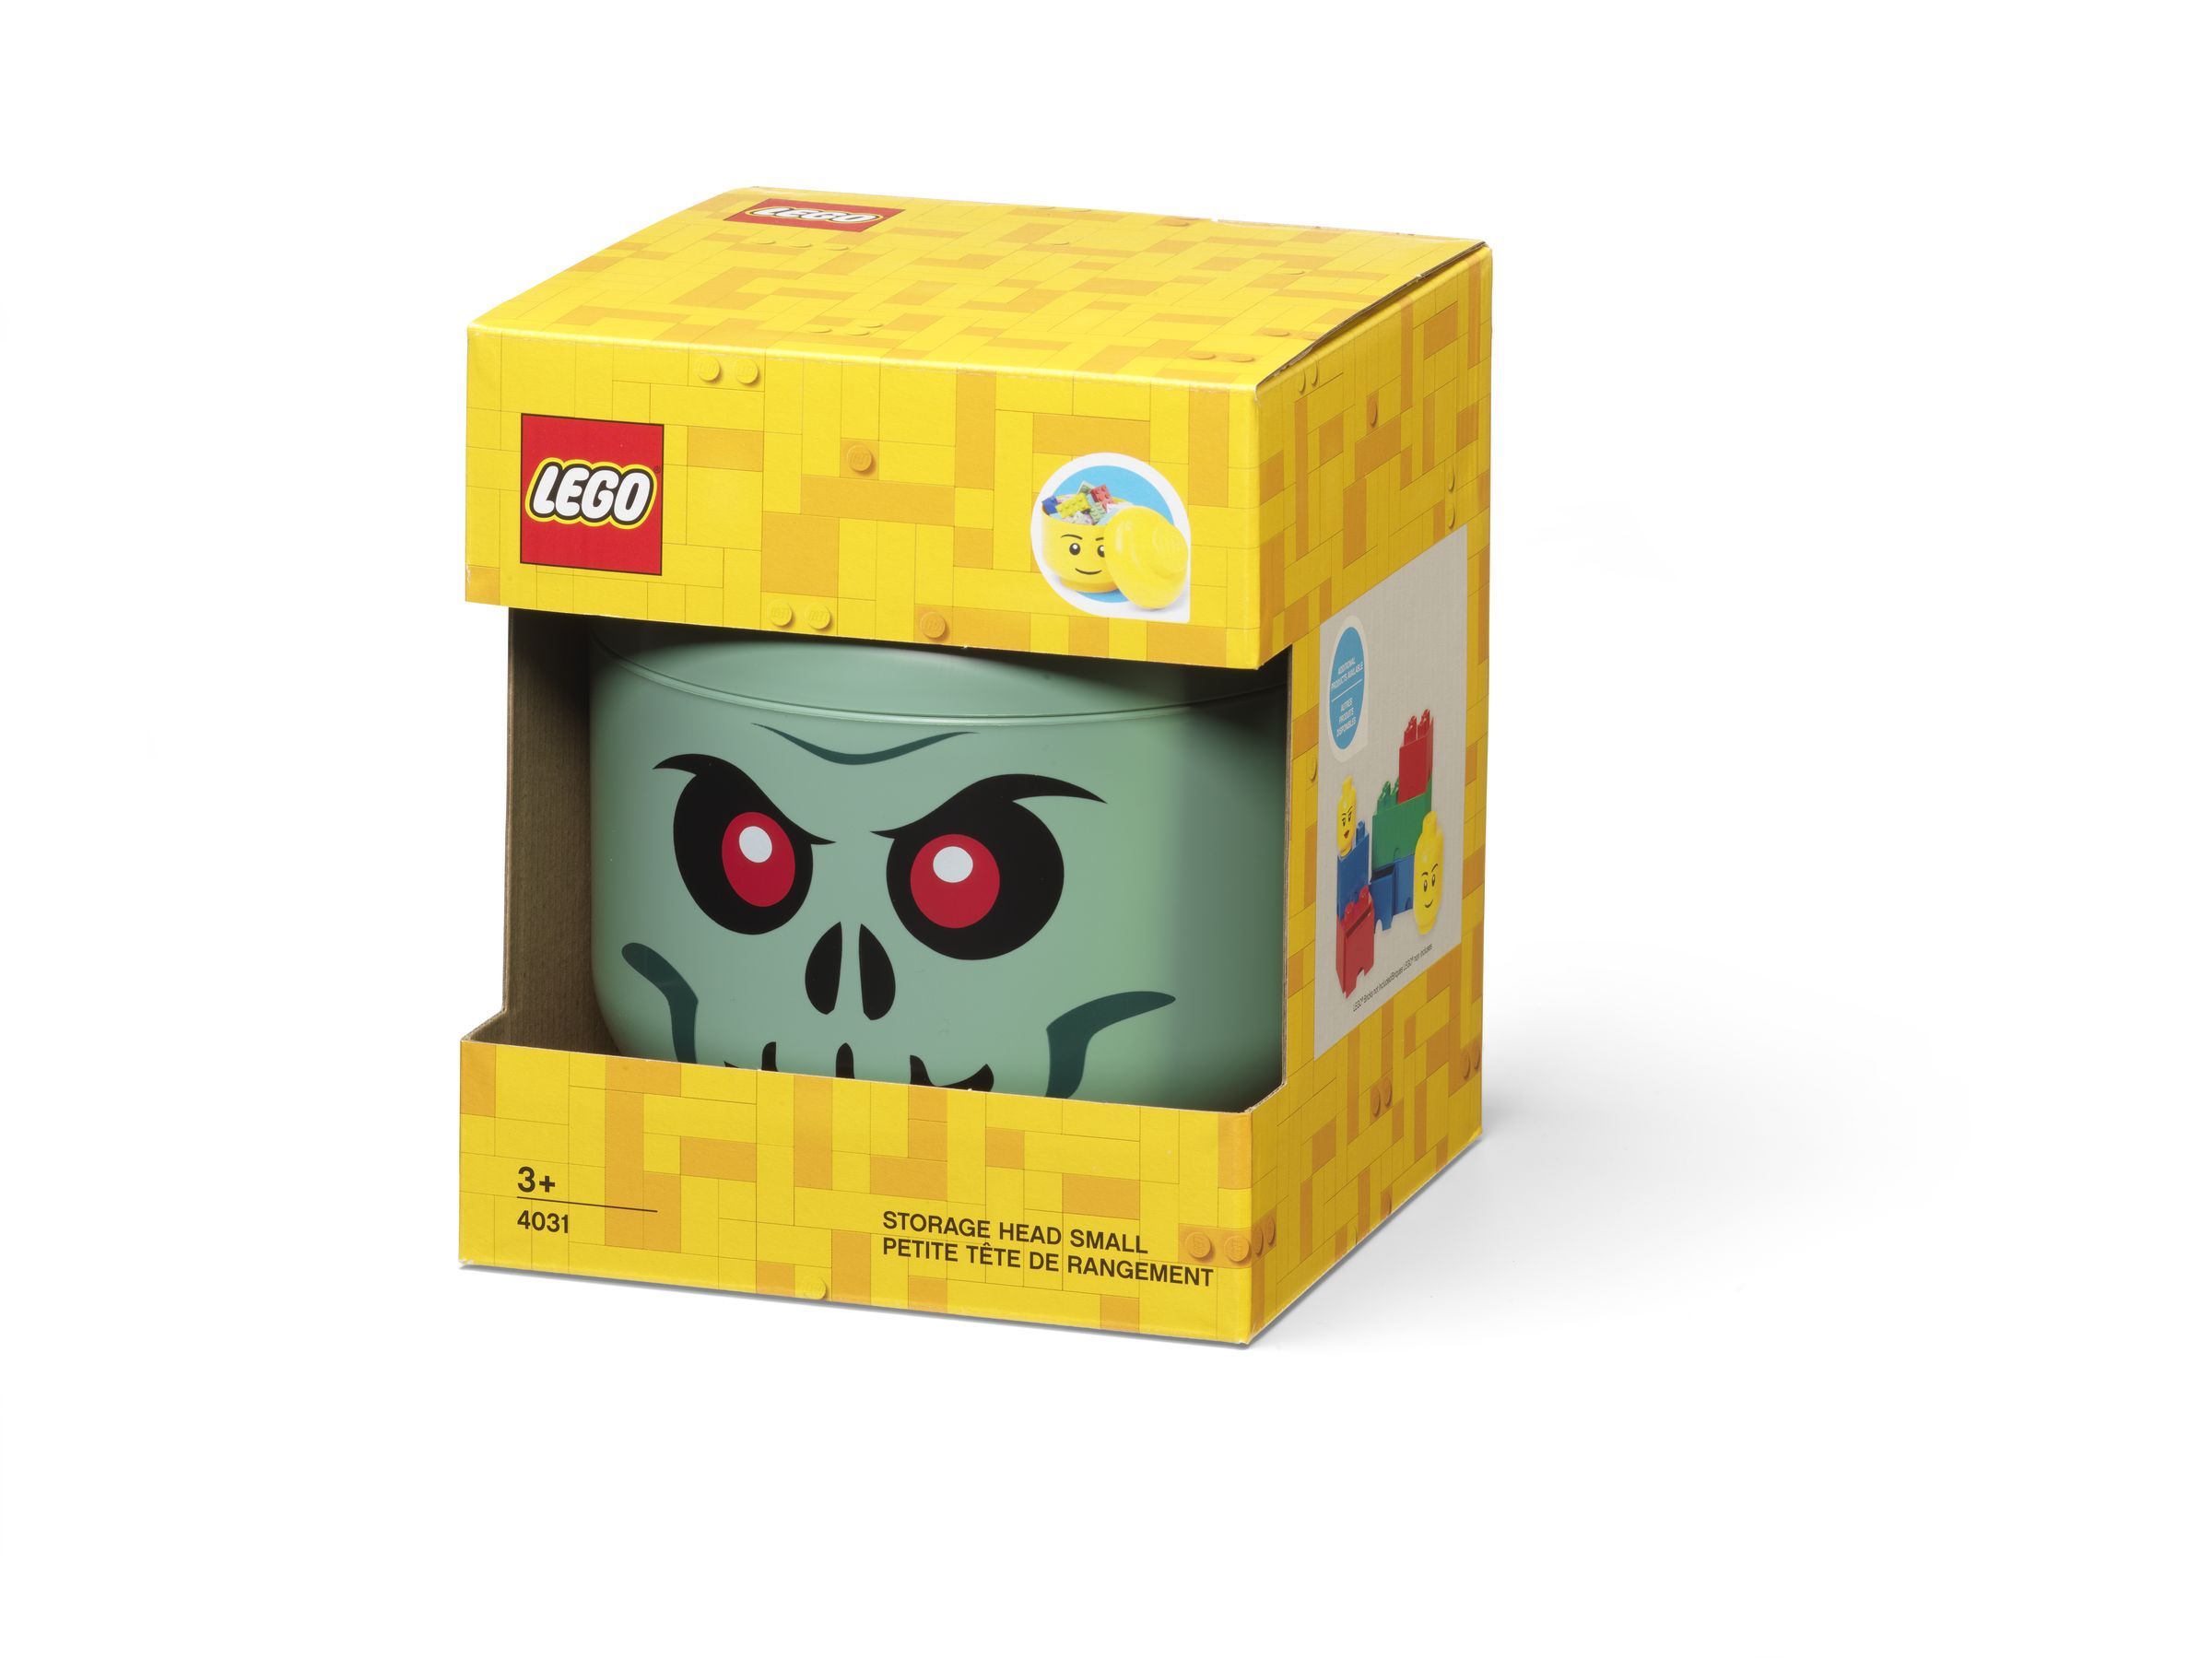 LEGO Gear 5007888 Skelettkopf – Kleine Aufbewahrungsbox in Grün LEGO_5007888_alt1.jpg